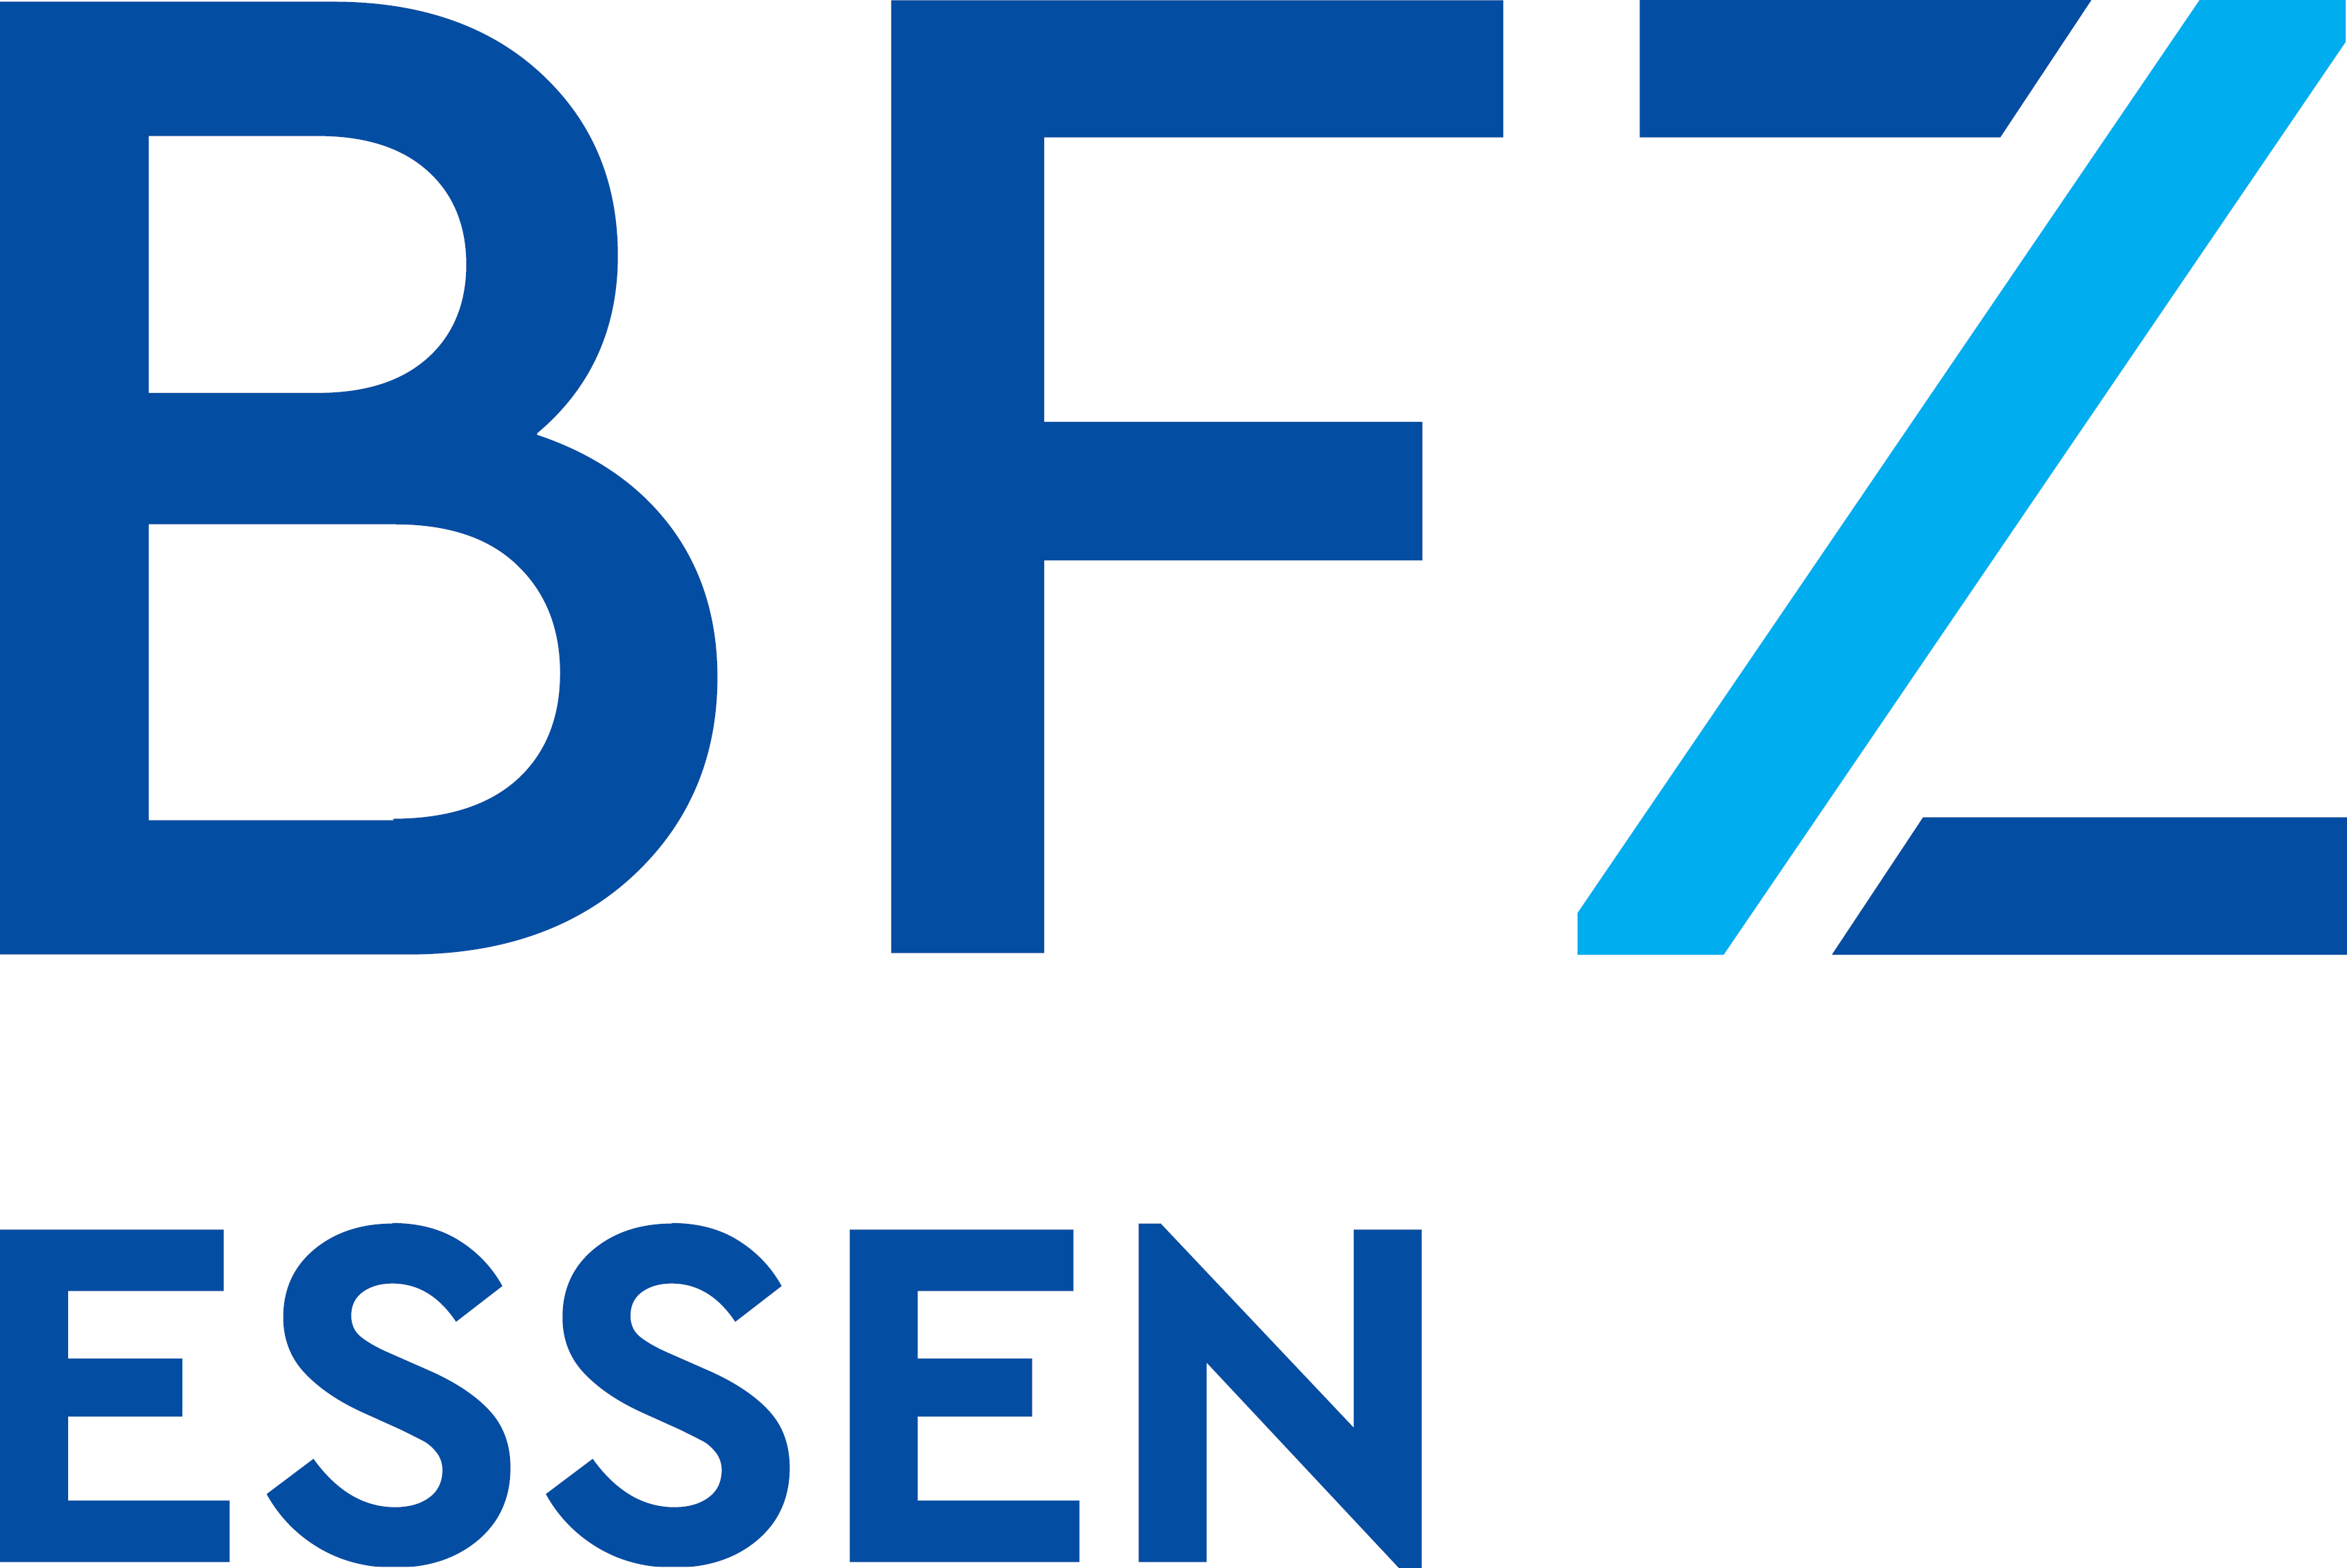 Marke Bfz-Essen GmbH mit Zusatz Essen